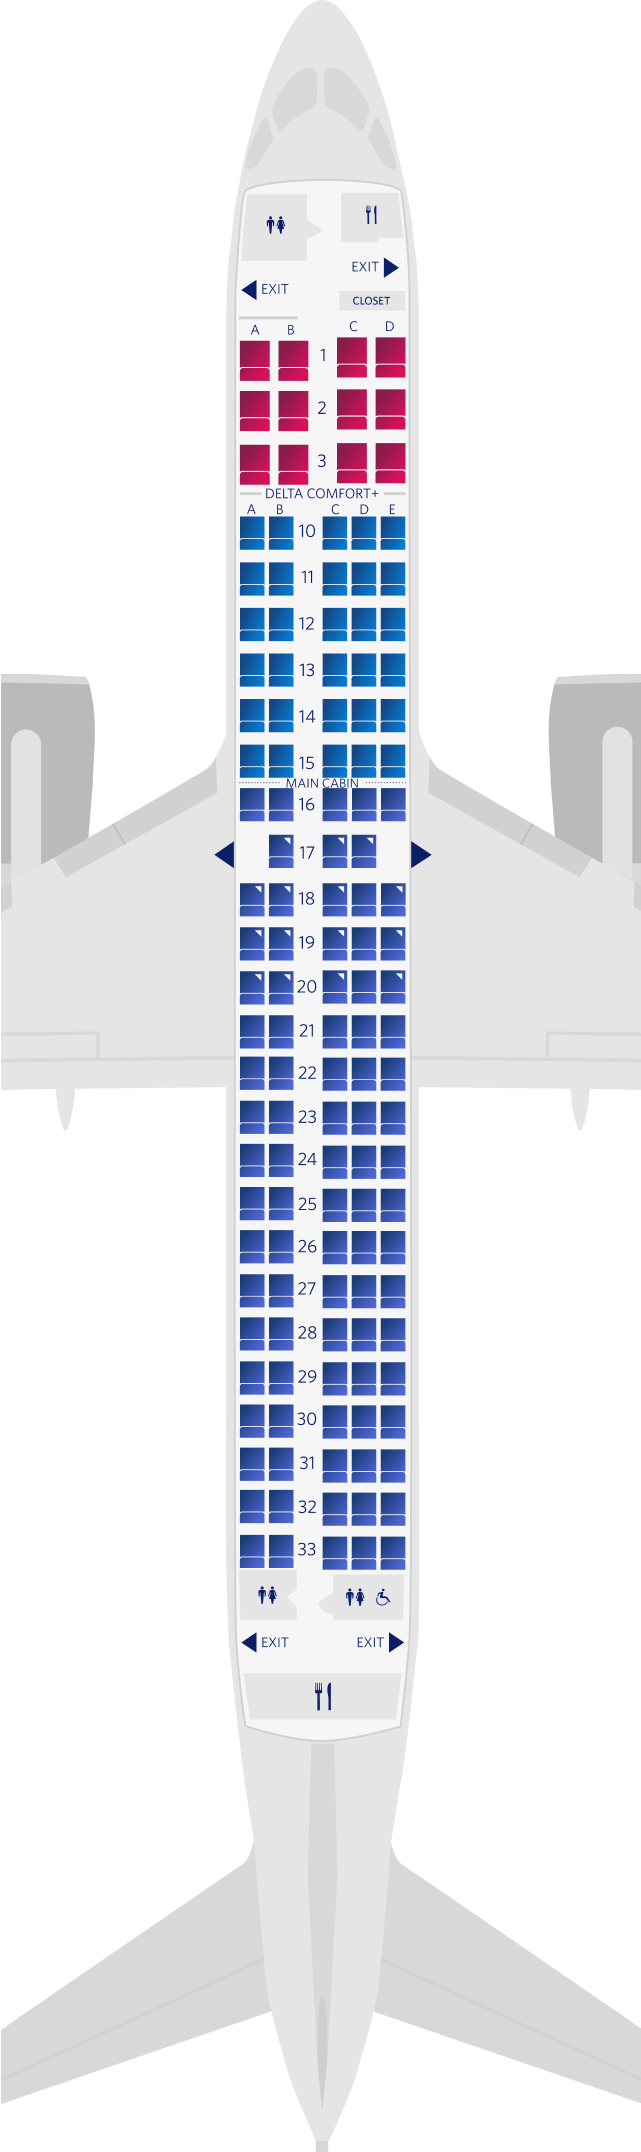 Plan des sièges de l'Airbus A220-300